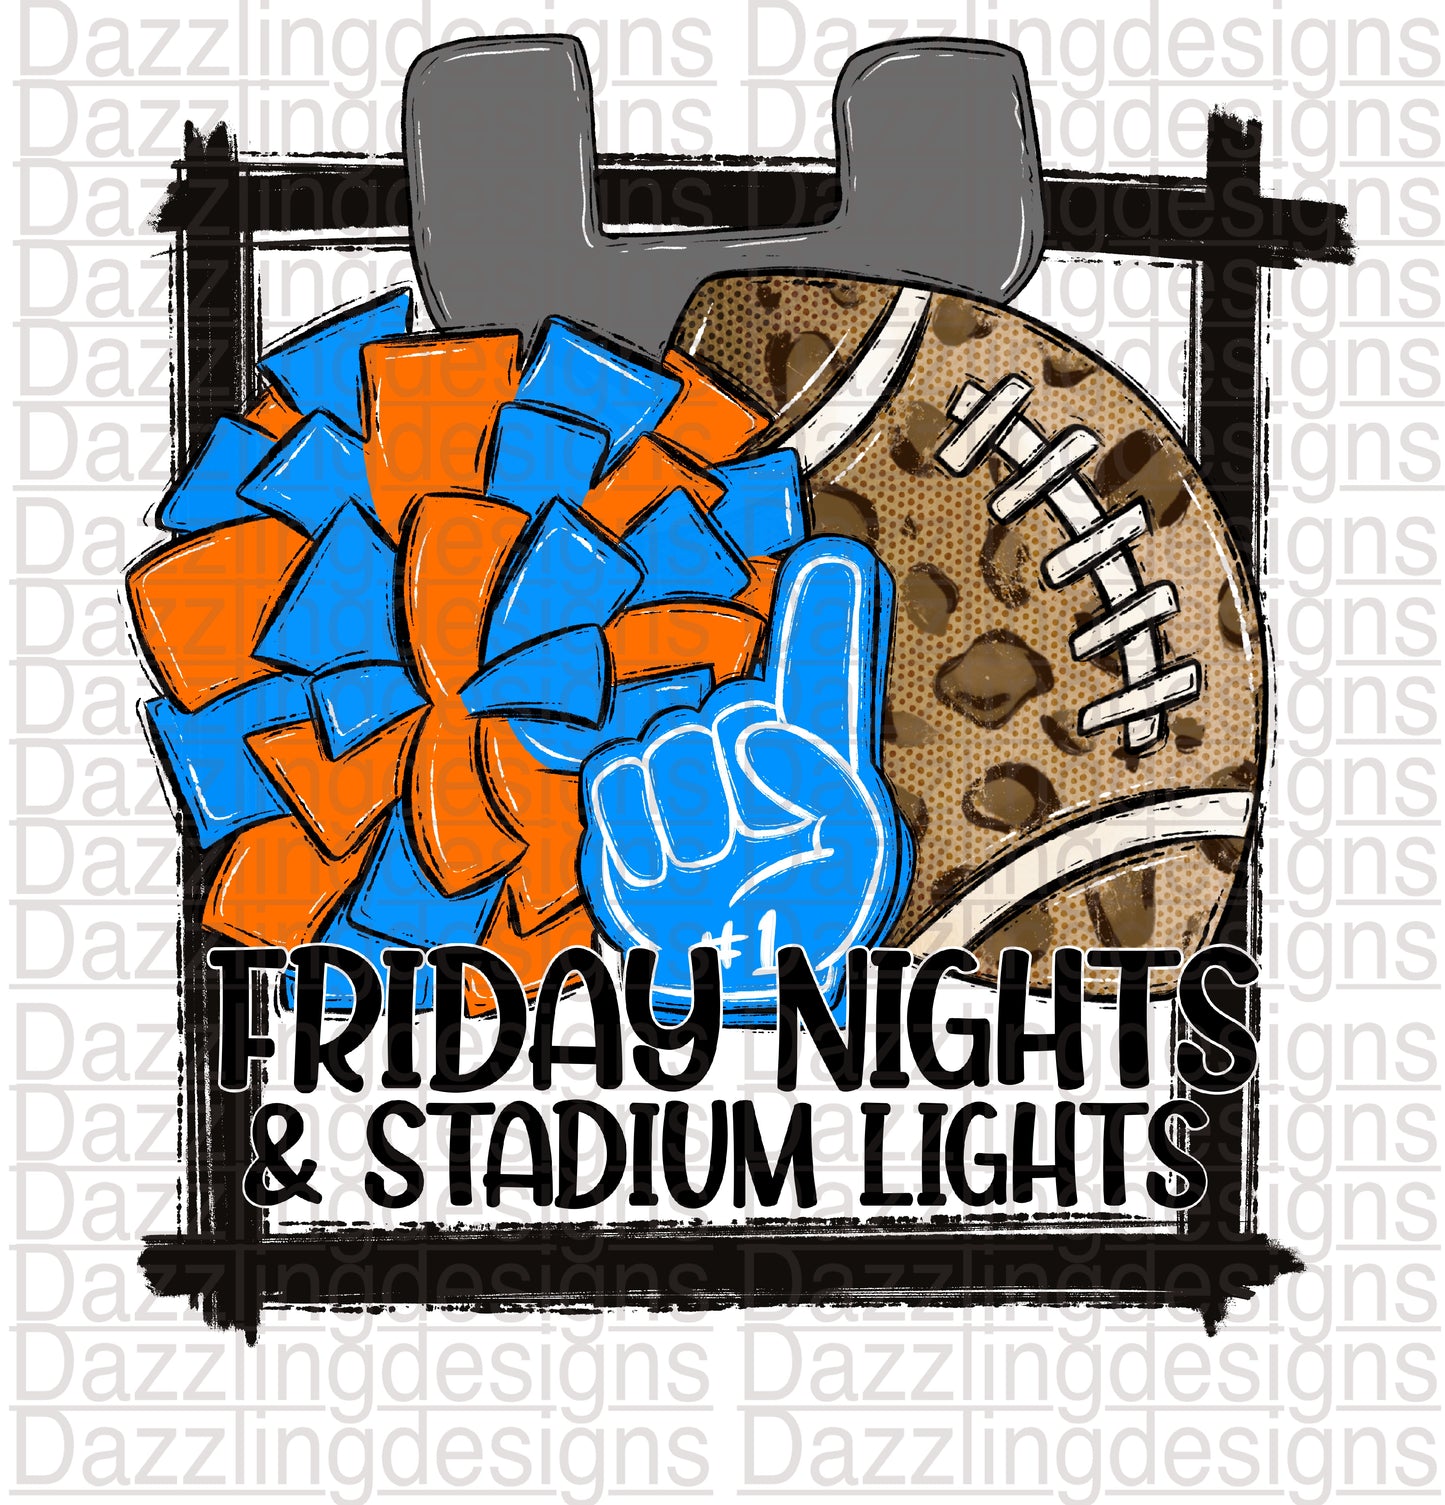 Football Friday Nights & Stadium Lights